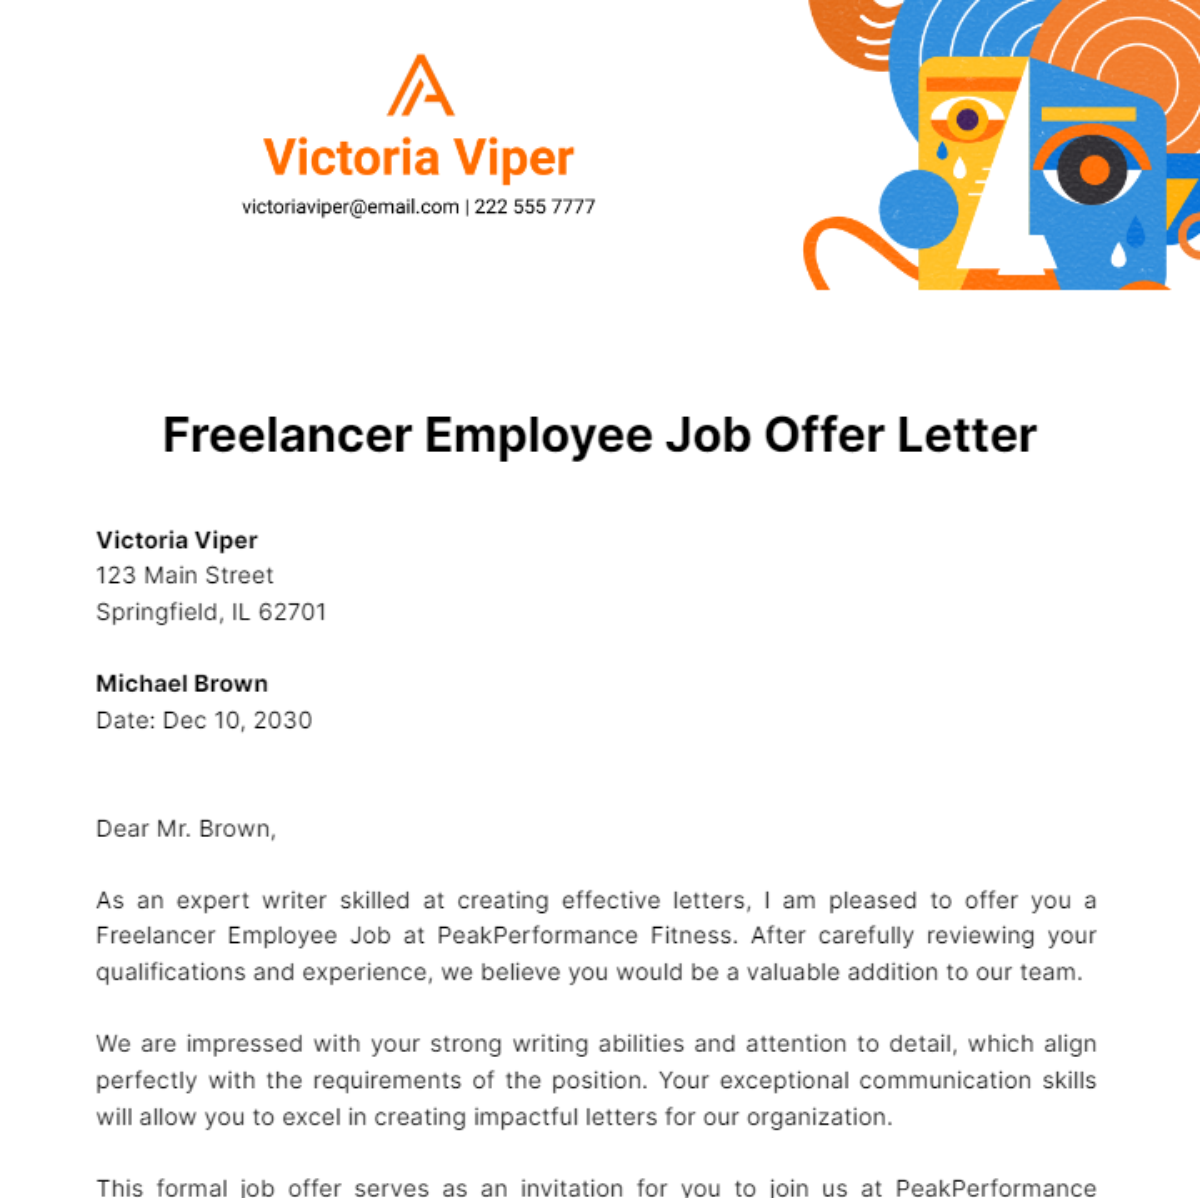 Freelancer Employee Job Offer Letter Template